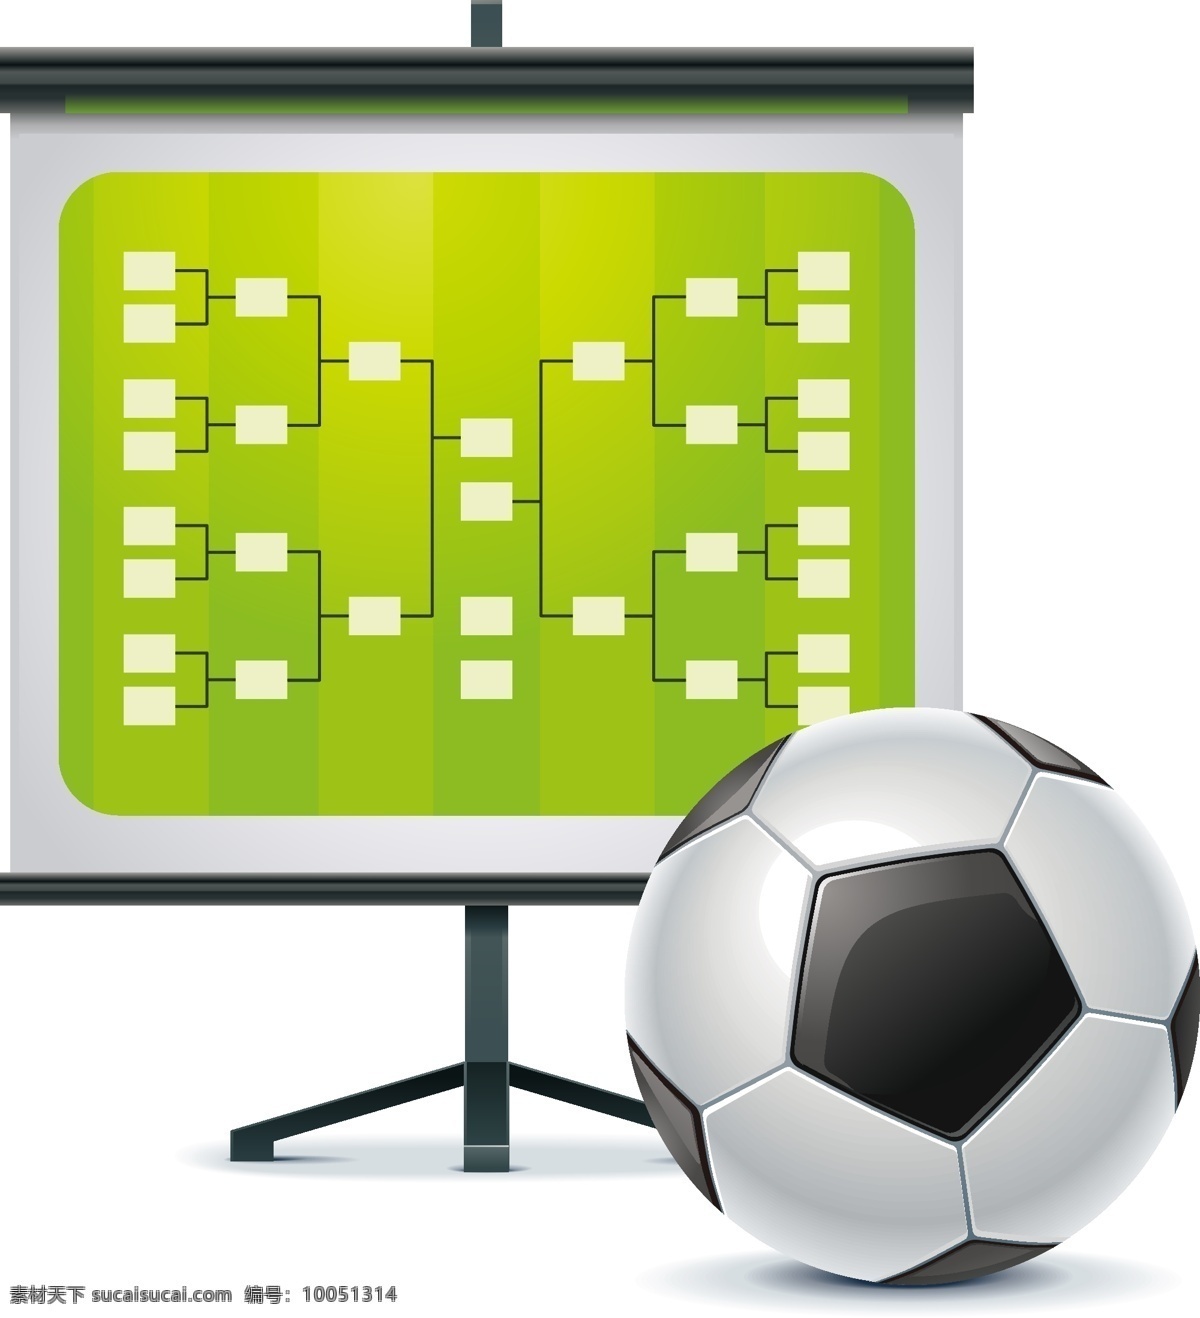 矢量 足球 屏幕 元素 比赛屏幕 ai元素 免扣元素